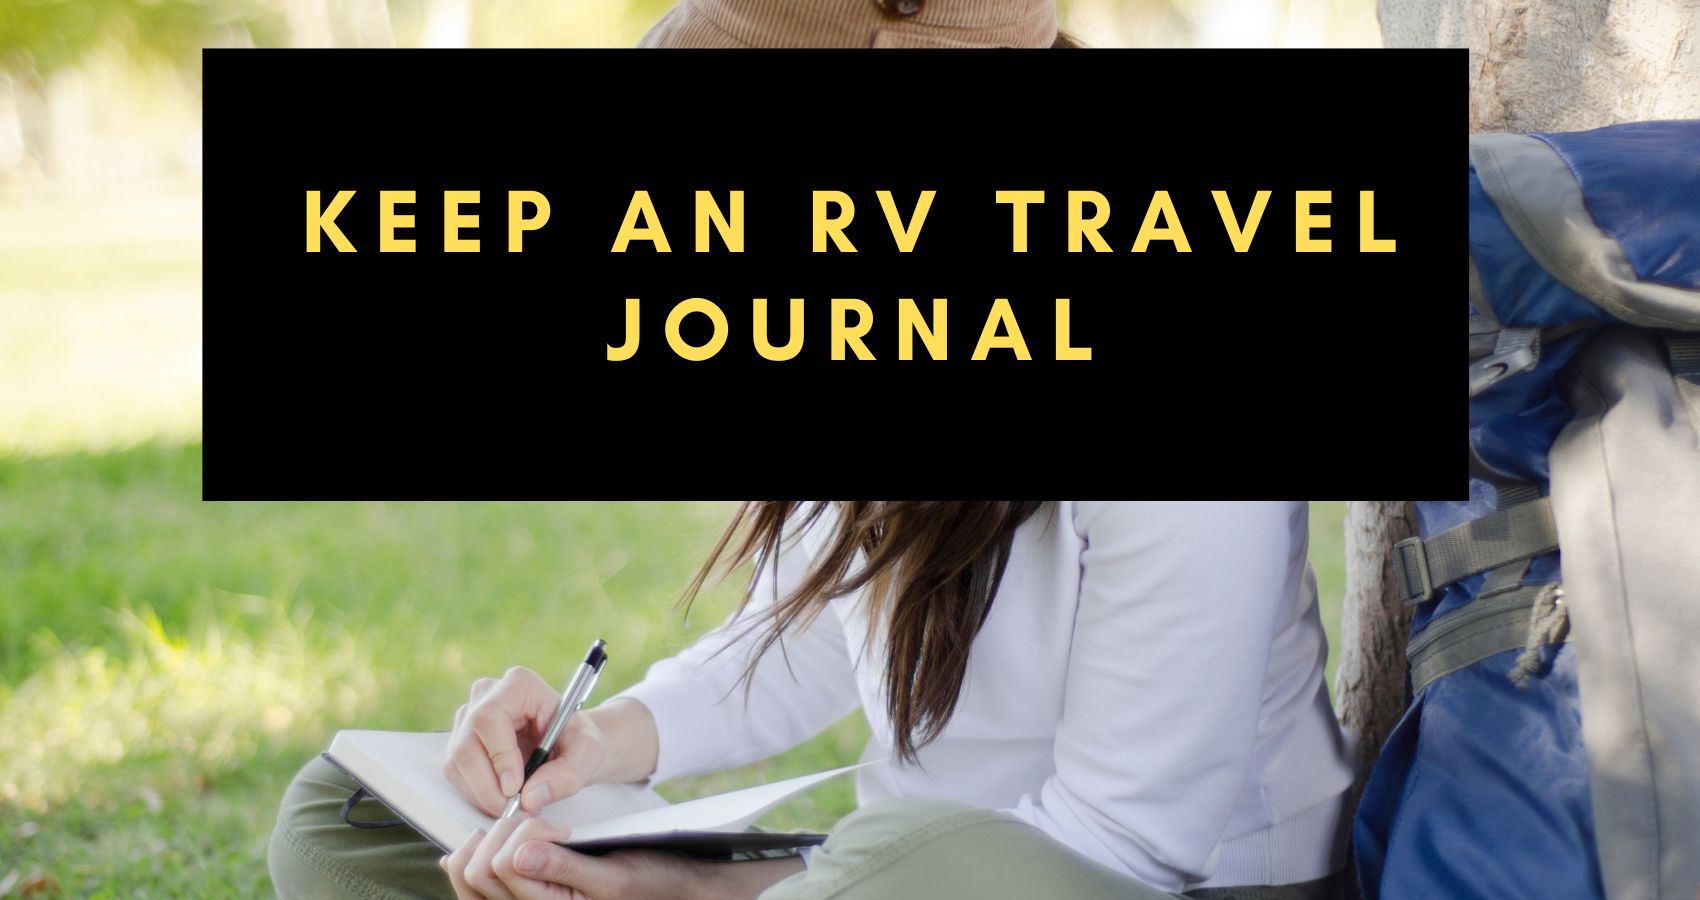 Keep an RV Travel Journal